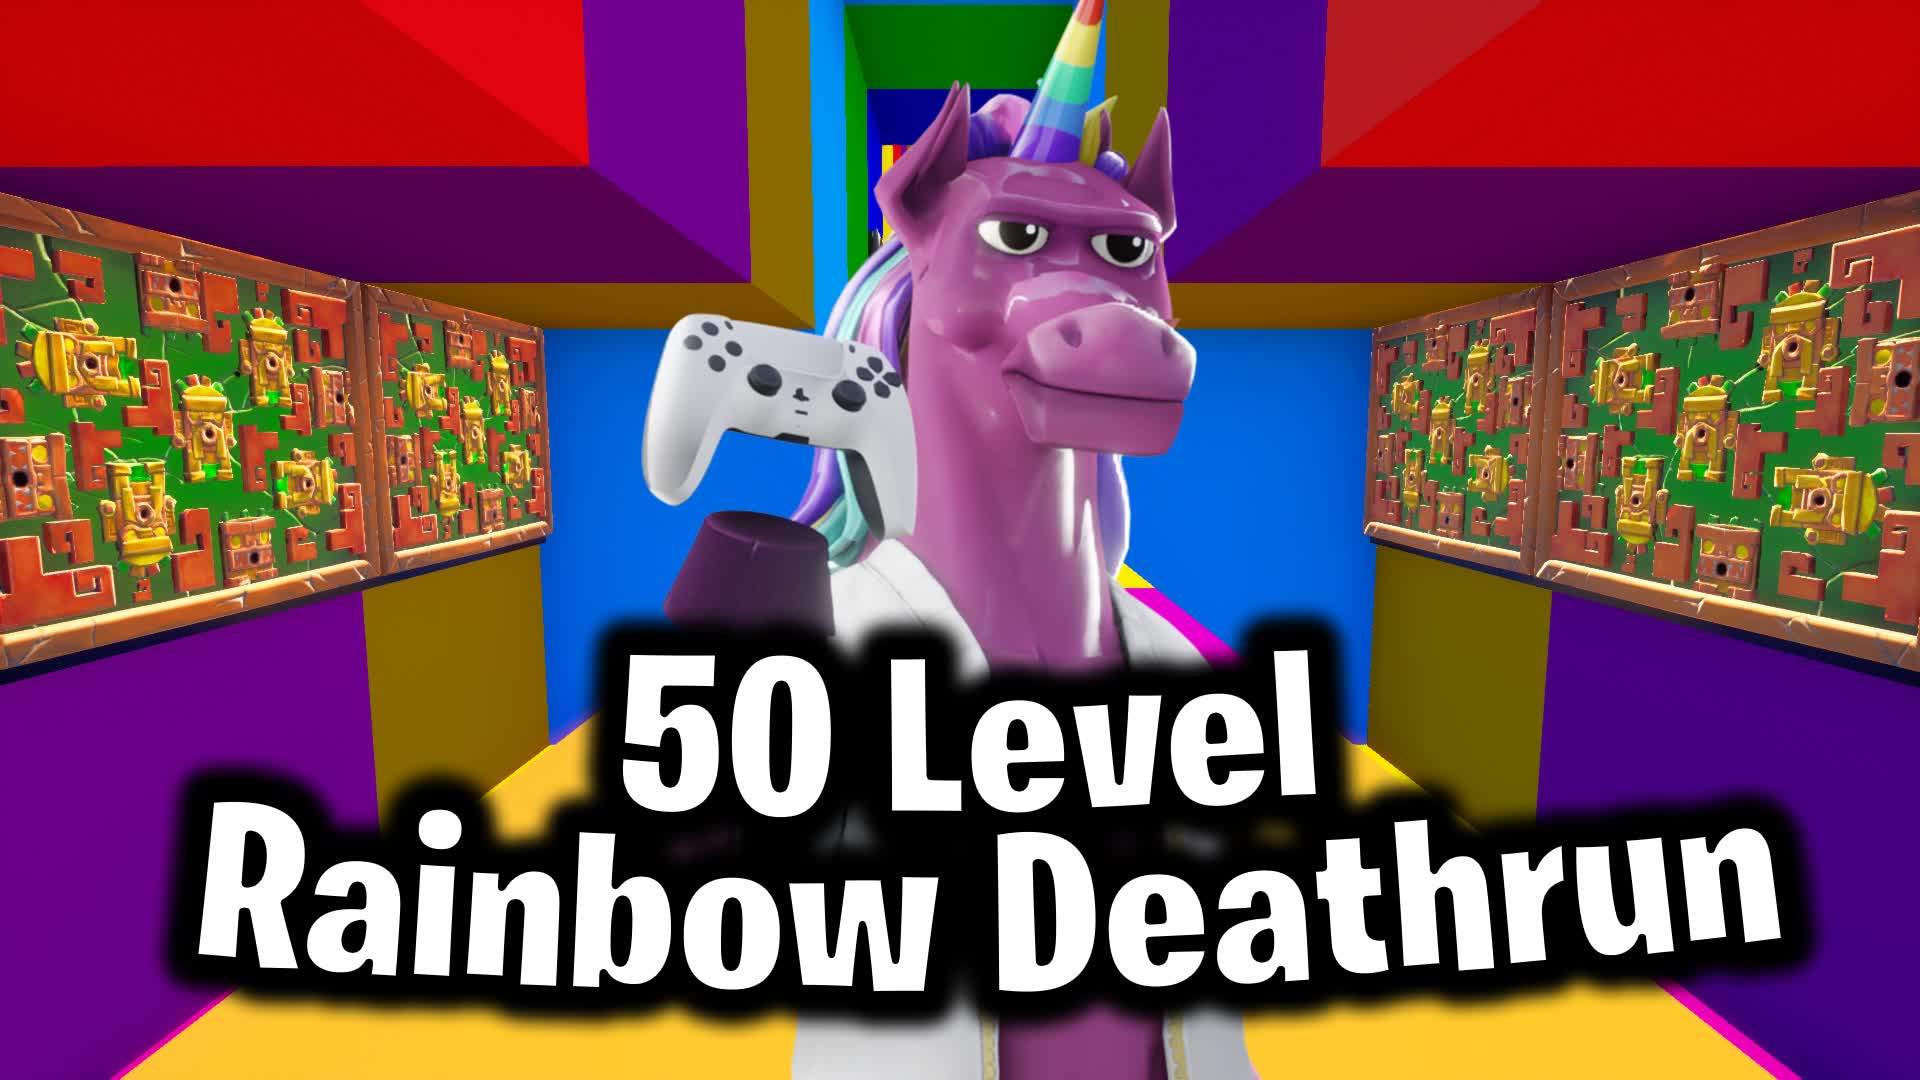 50 Level Rainbow Deathrun